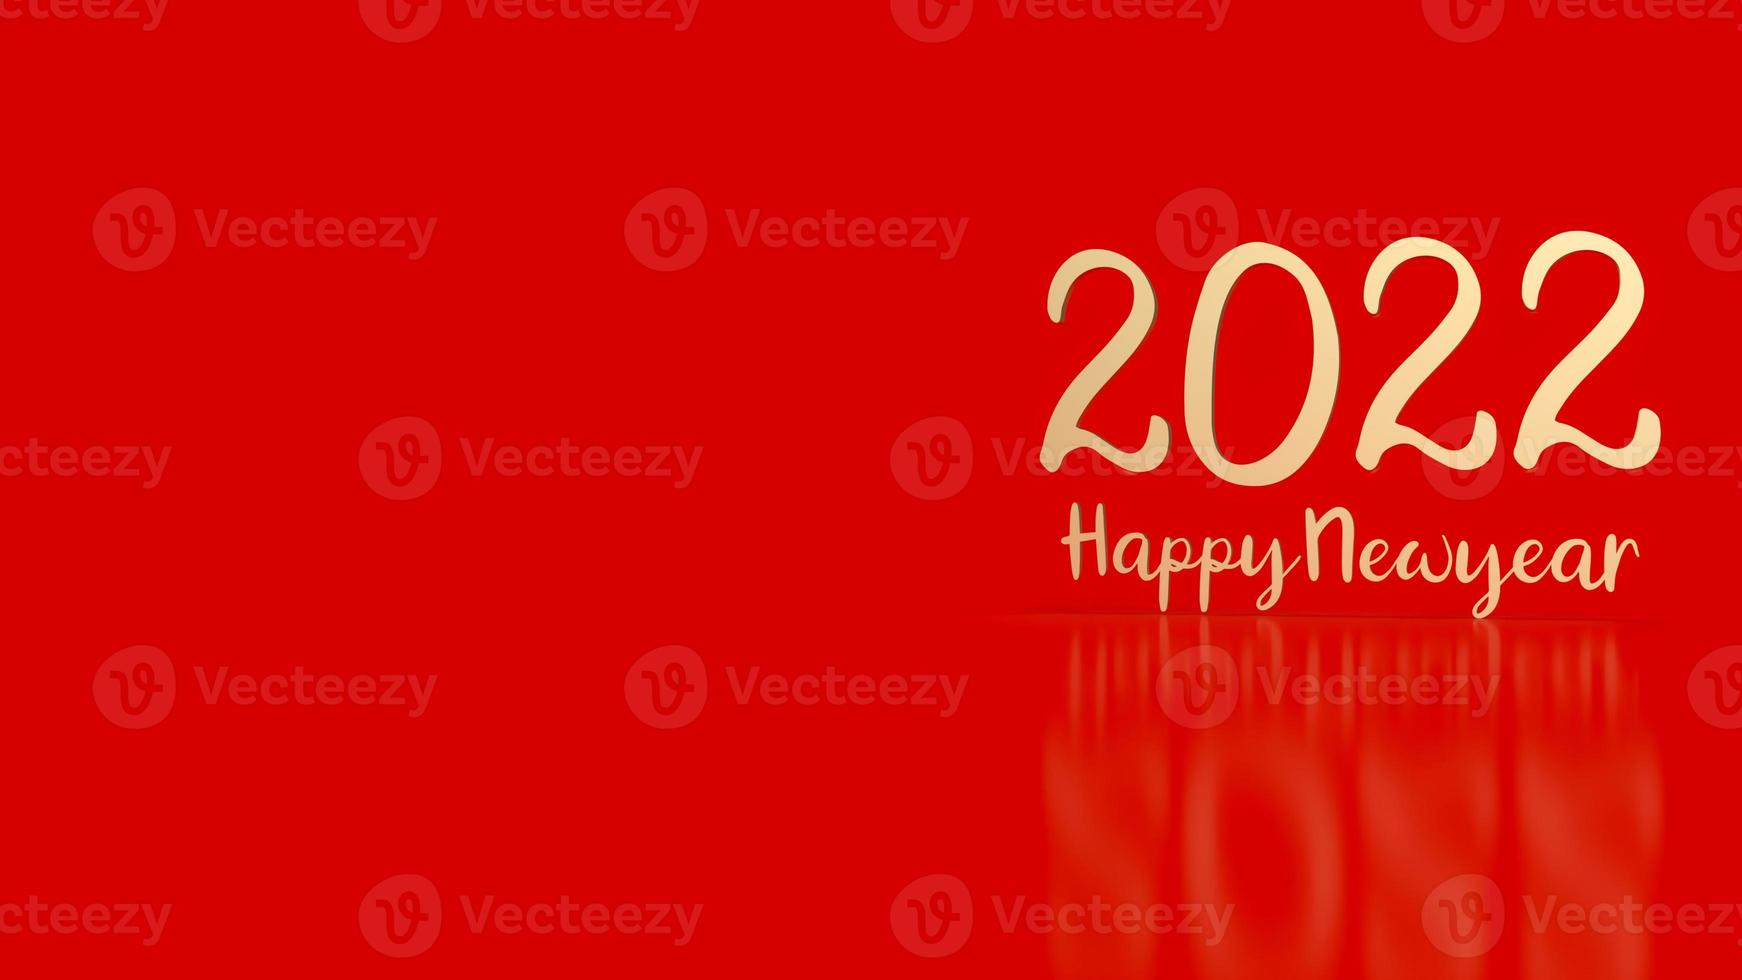 número de oro 2022 sobre fondo rojo para la representación 3d del concepto de feliz año nuevo foto